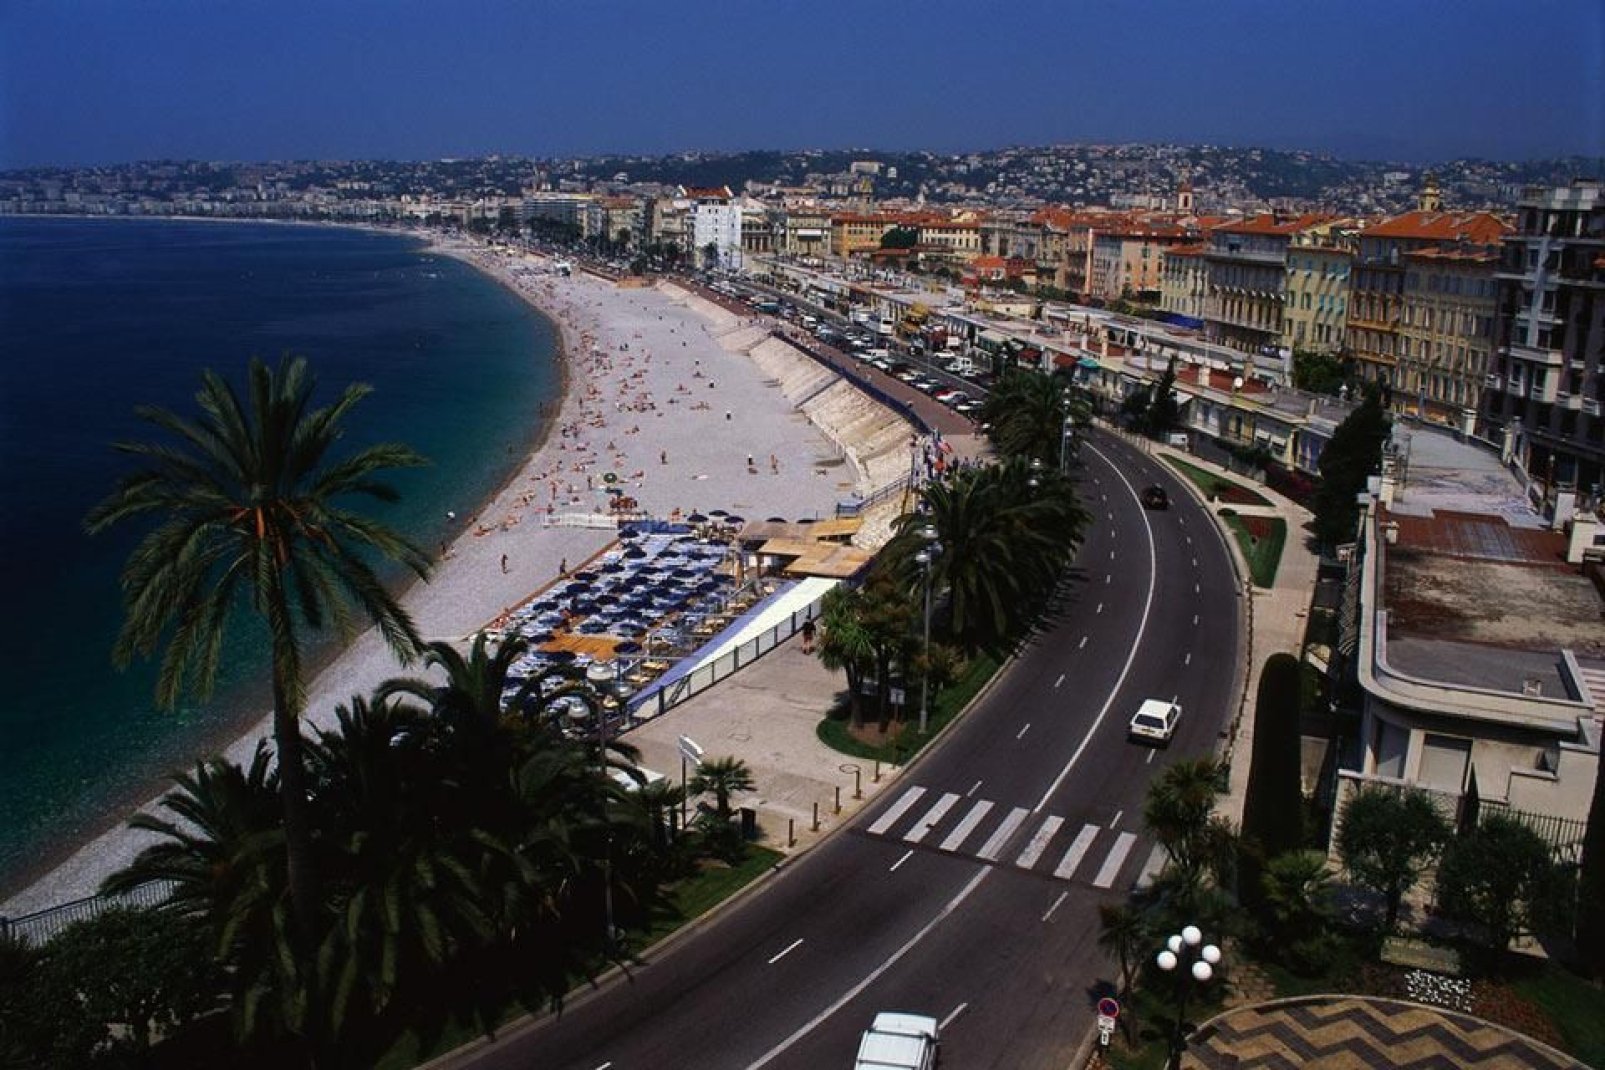 Cosa sarebbe la città senza la sua famosa promenade des anglais, o "prom'"? Questa strada costiera lunga 7 chilometri è un passaggio obbligato per chi visita Nizza.